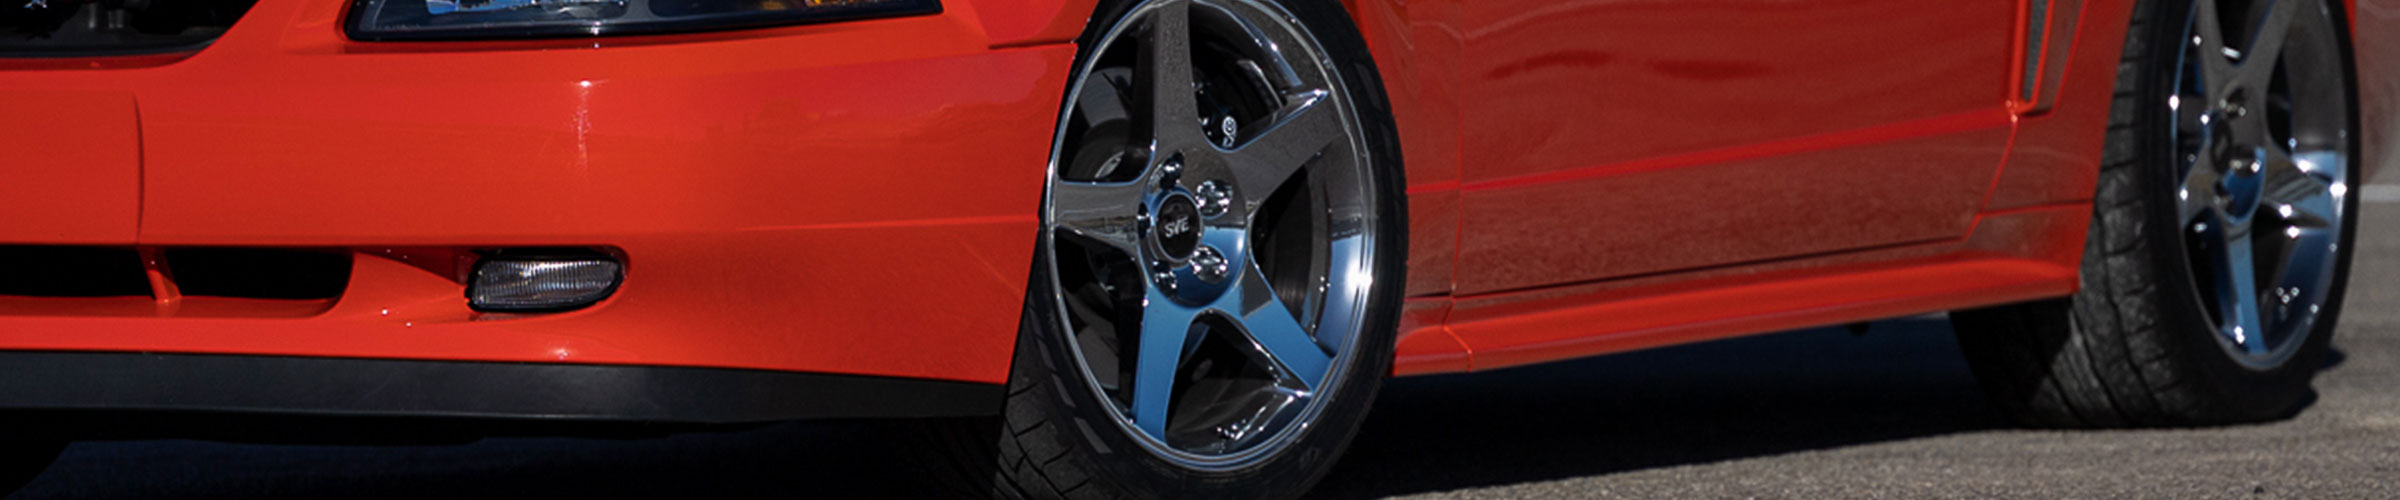 Best Mustang Wheels | Ranked & Reviewed - 03 Cobra Wheels